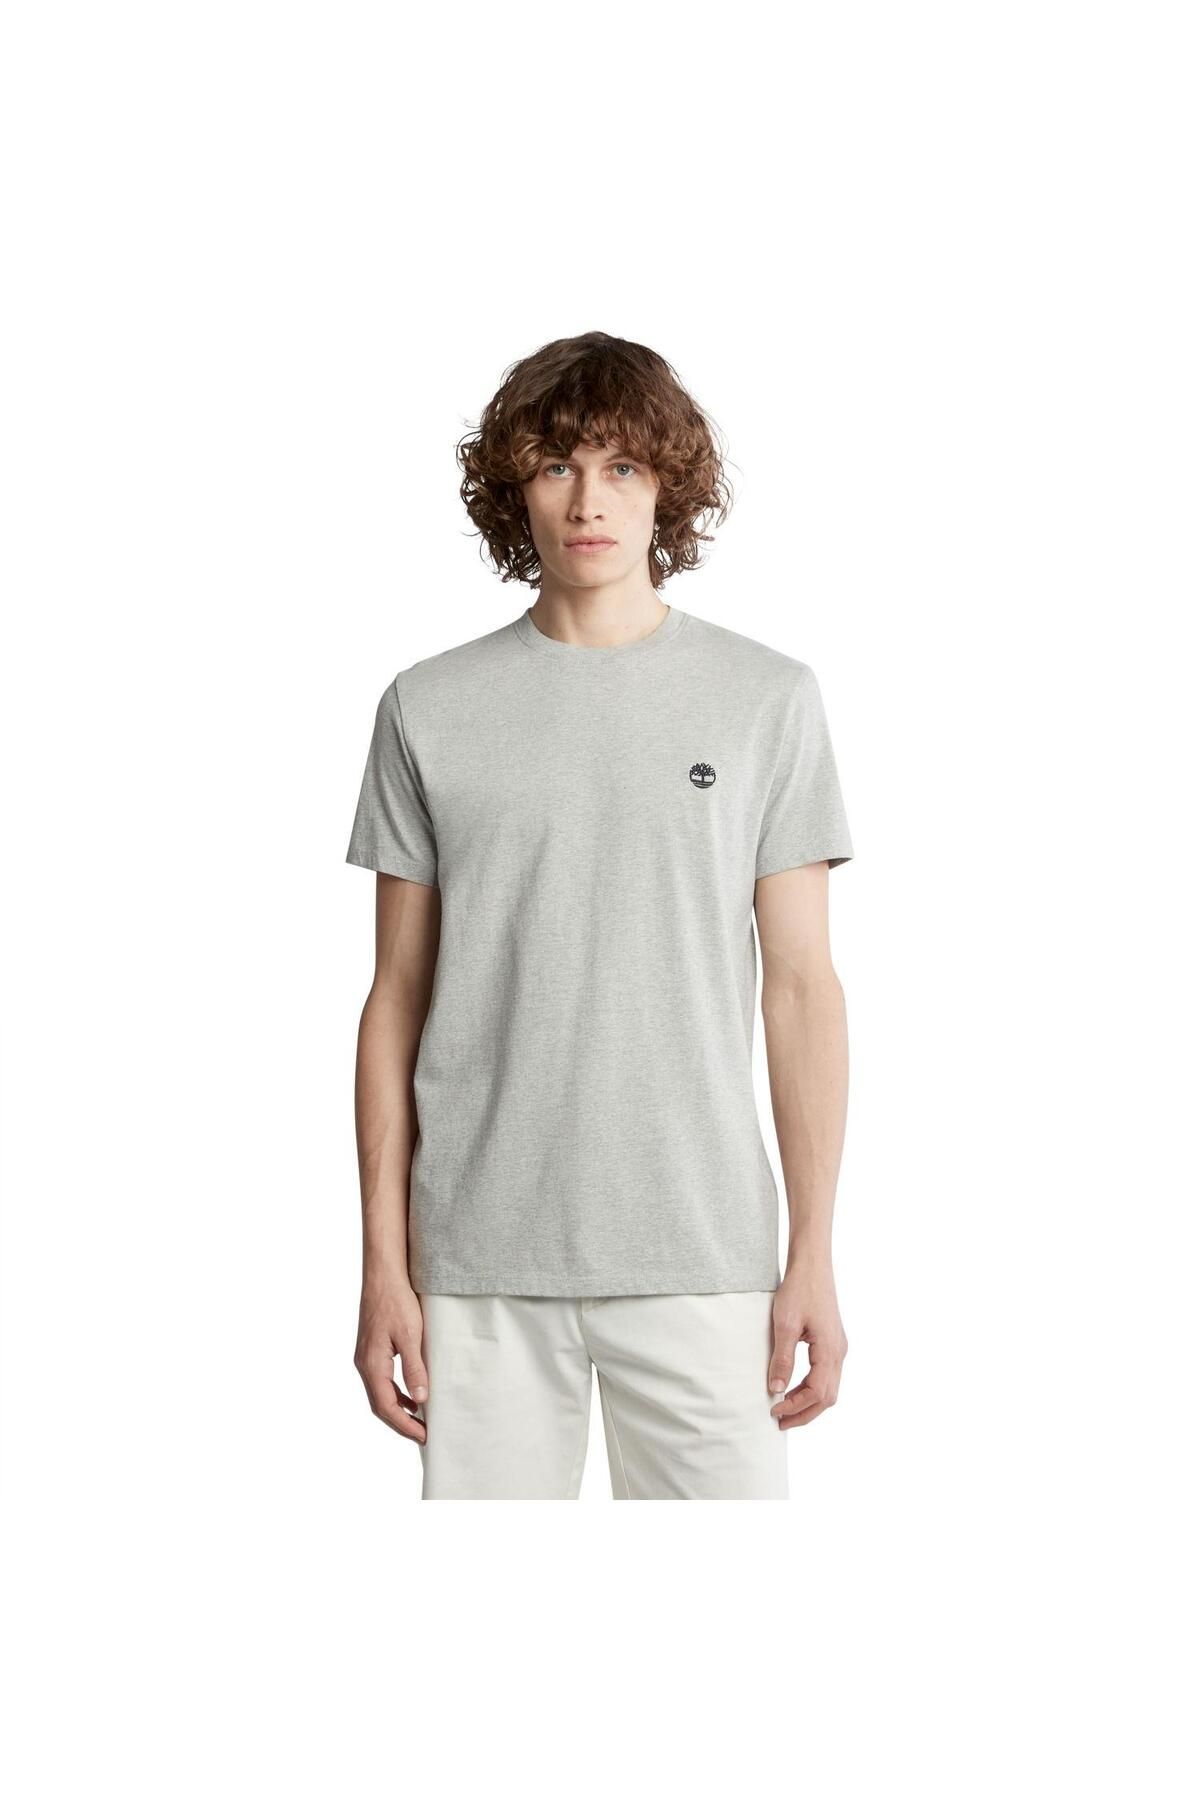 Timberland Short Sleeve Tee Erkek T-Shirt TB0A2BPR0521 Gri-XL